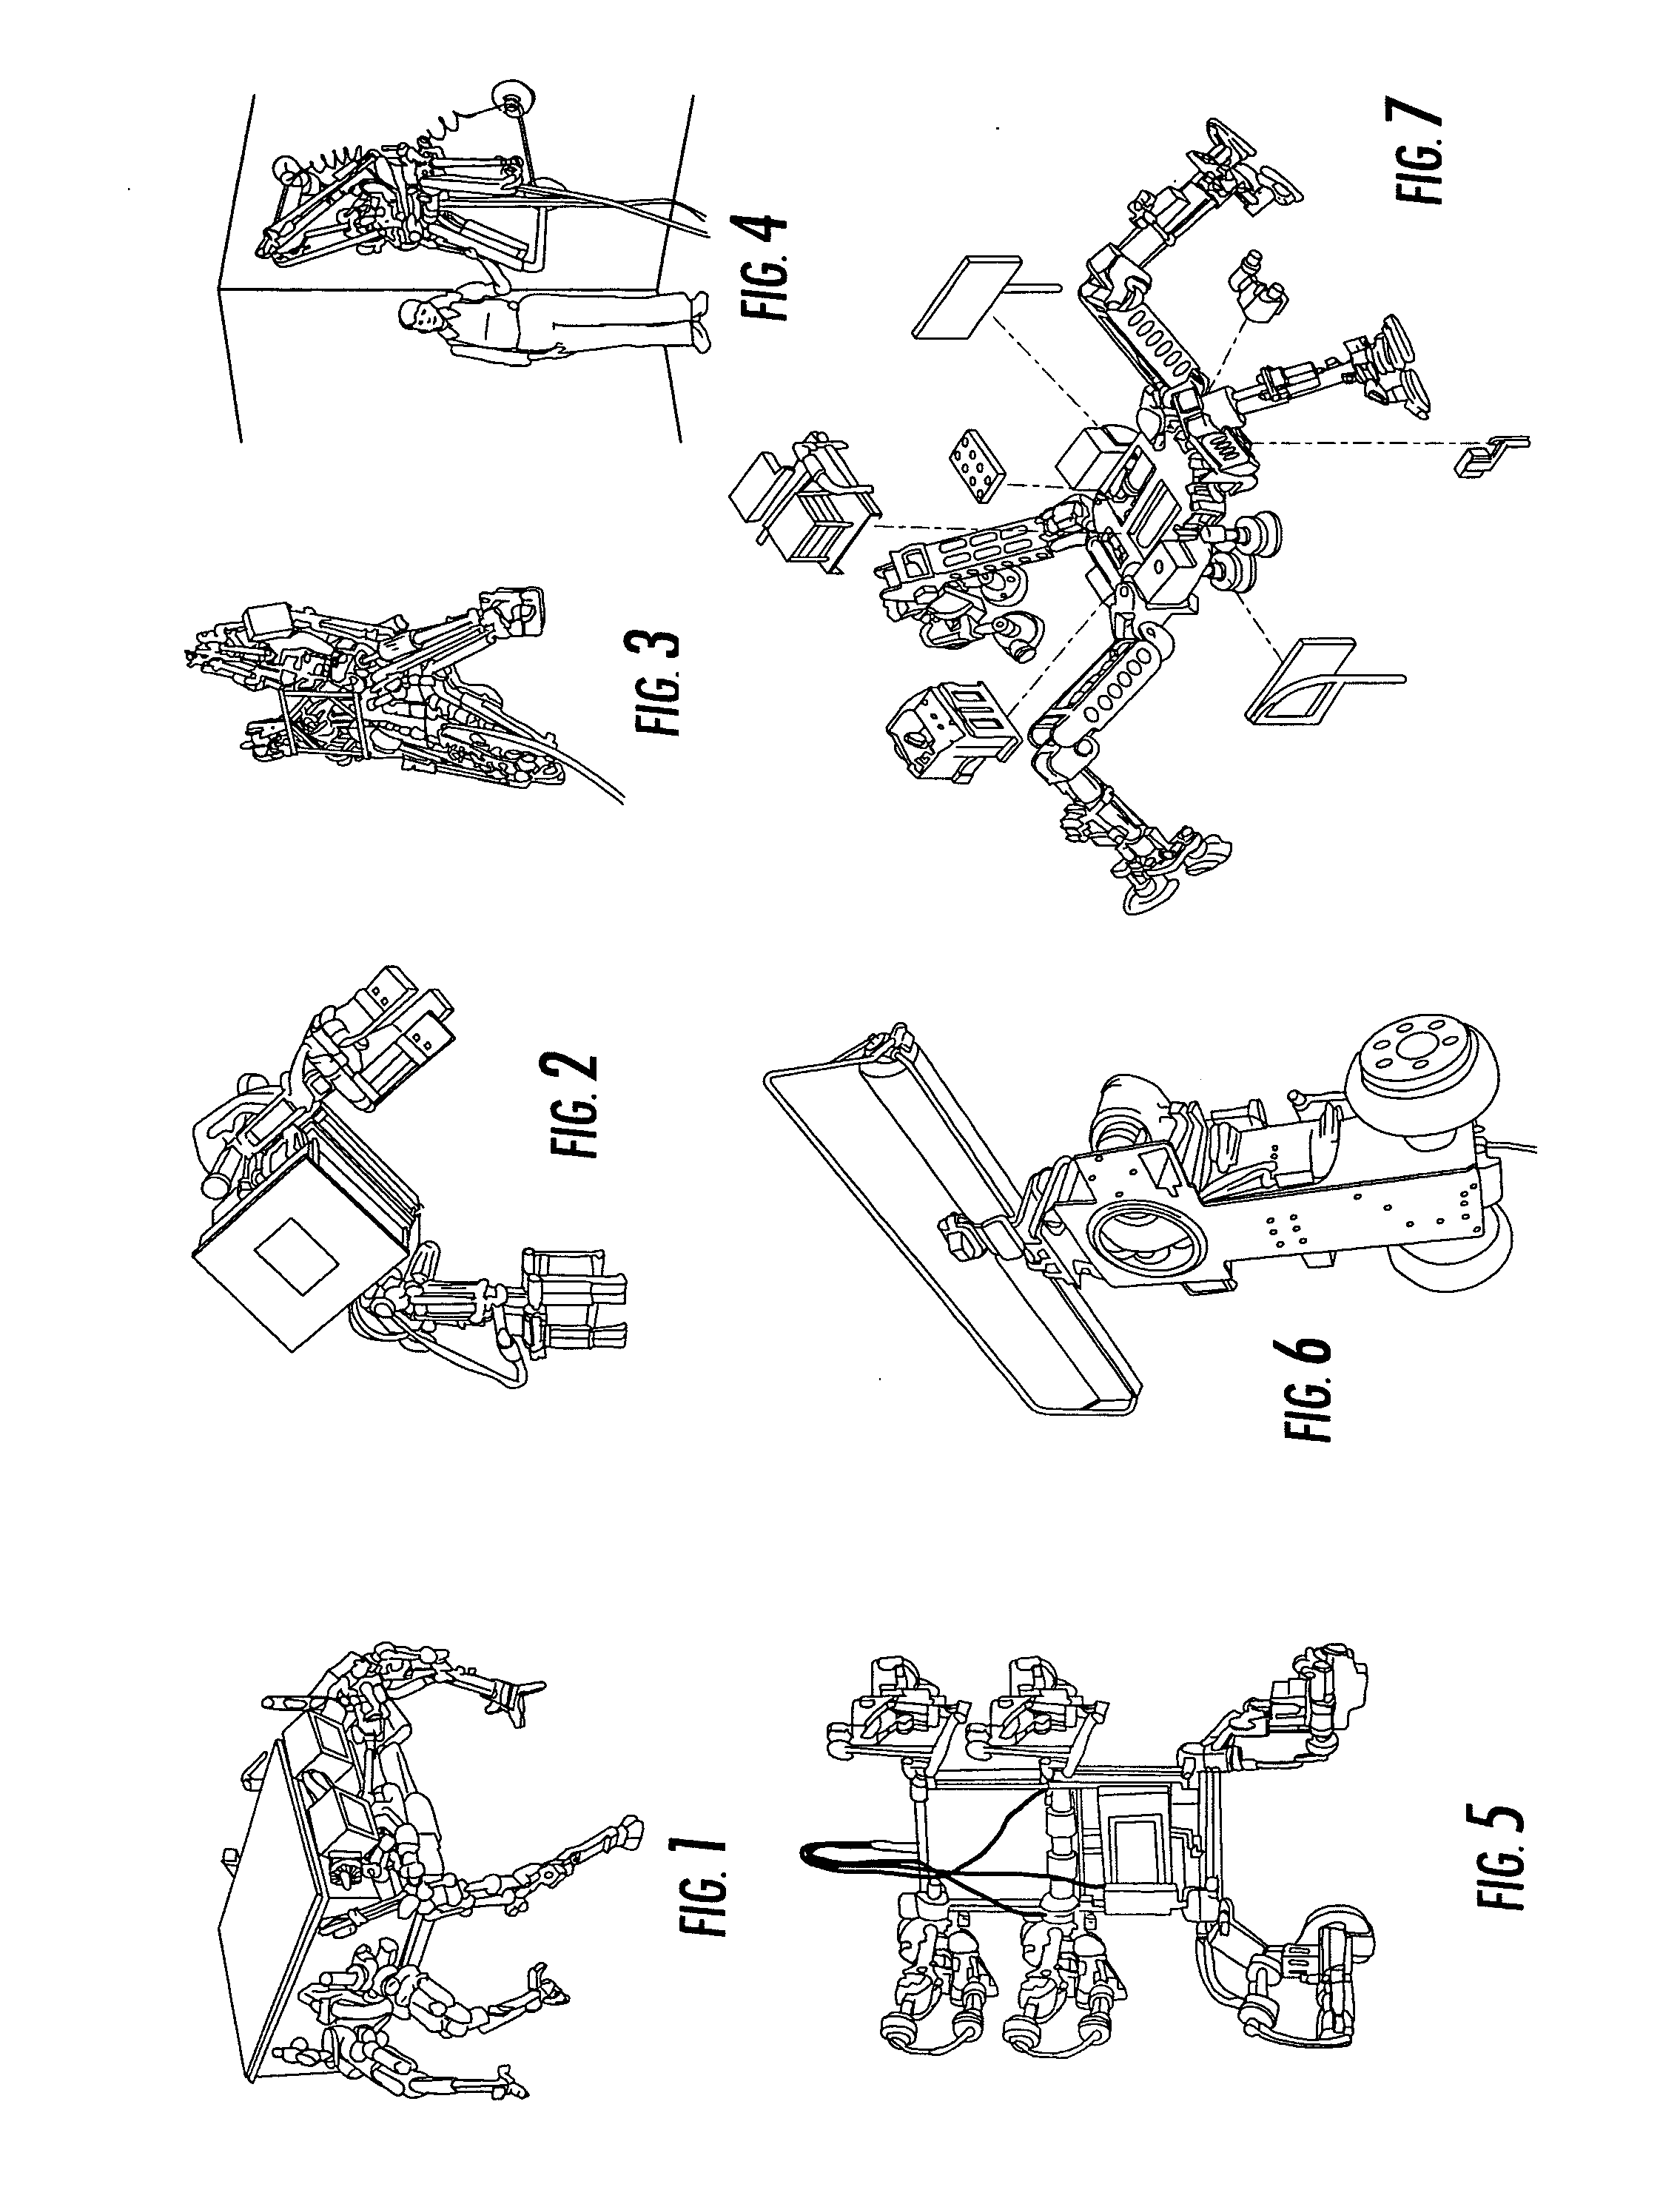 Robot and robot leg mechanism